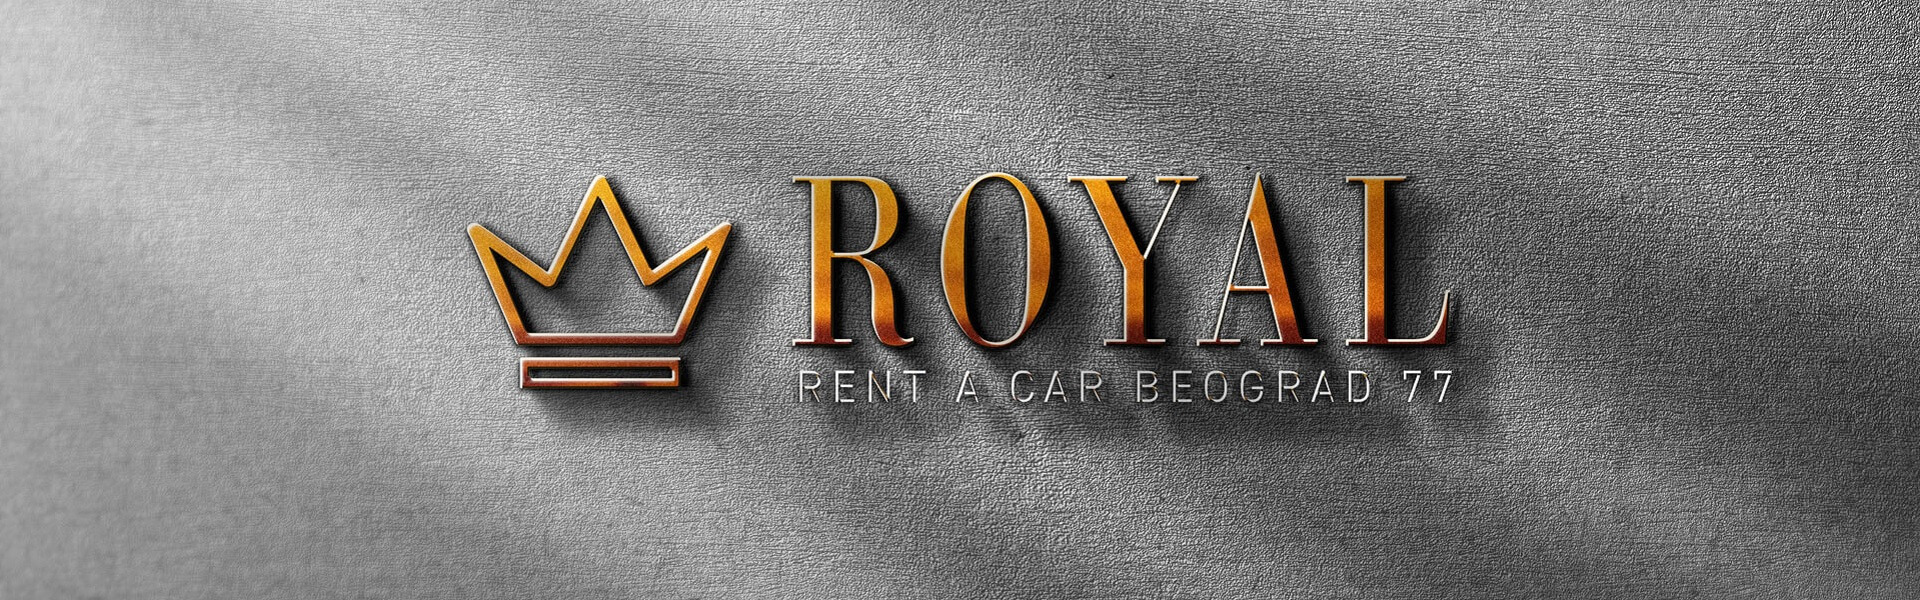 Rent a car Atos | Rent a car Belgrade Royal